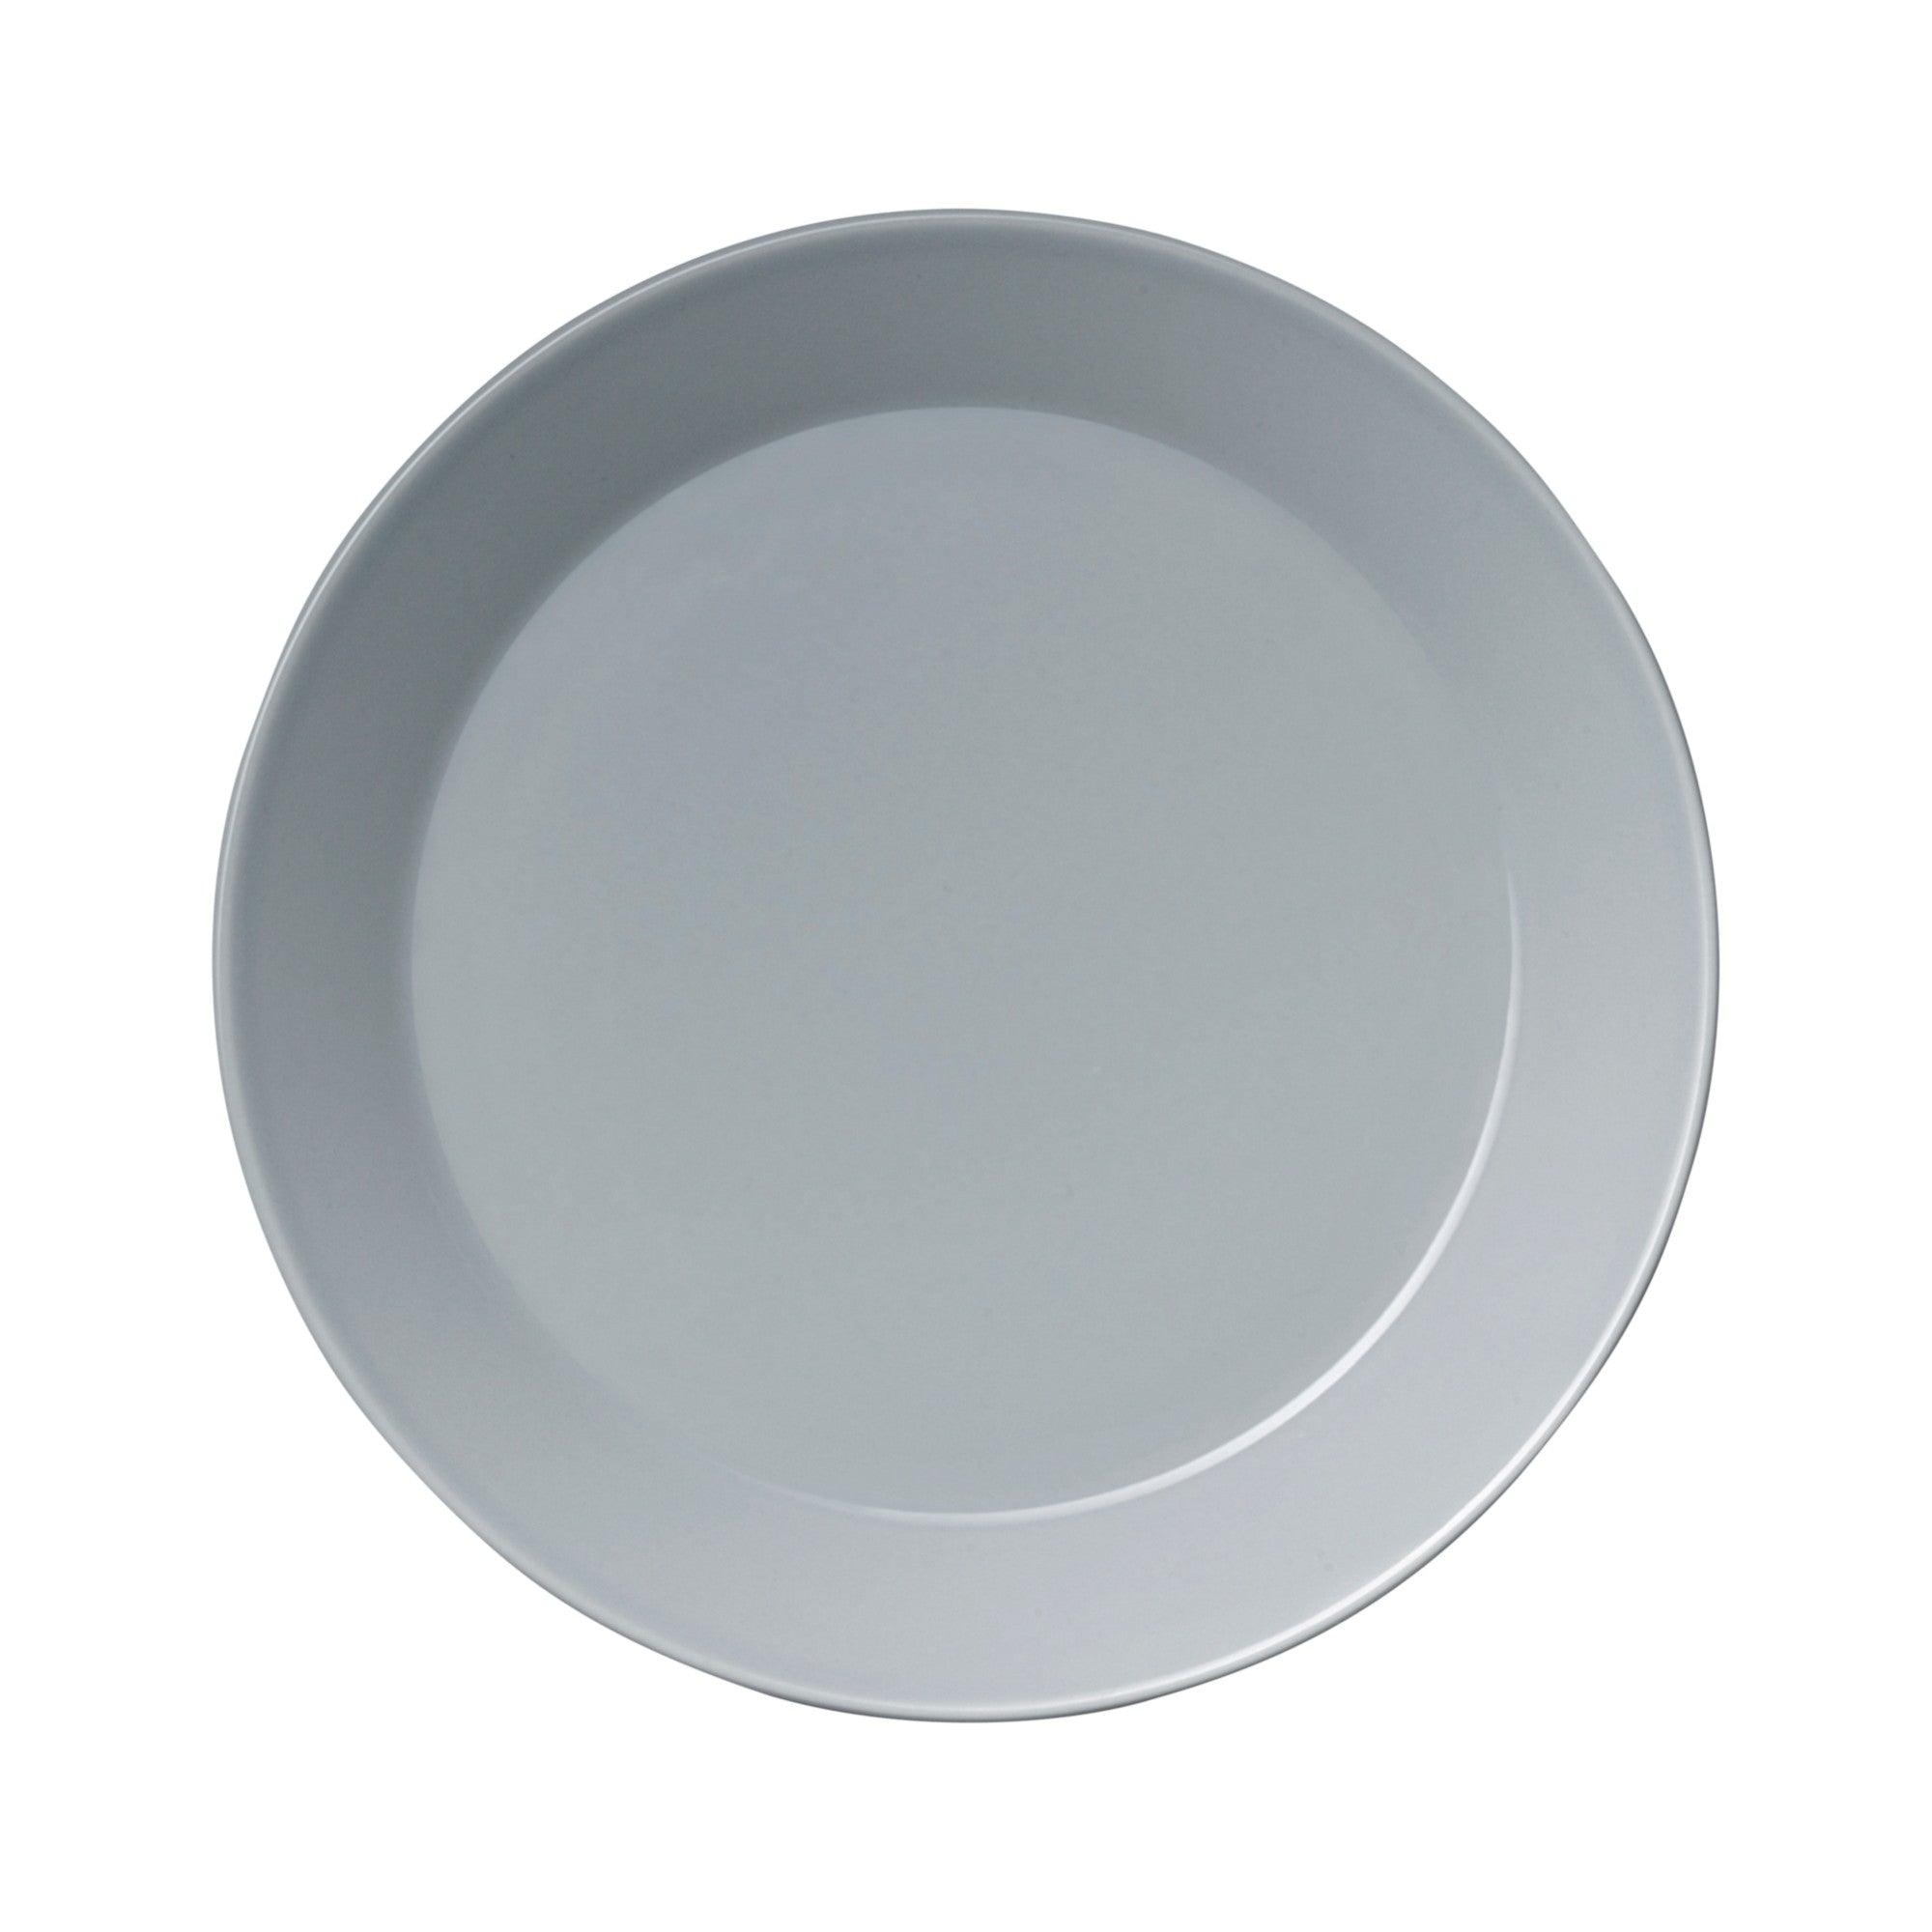 Teema plate 21 cm Salad plate 8.5"